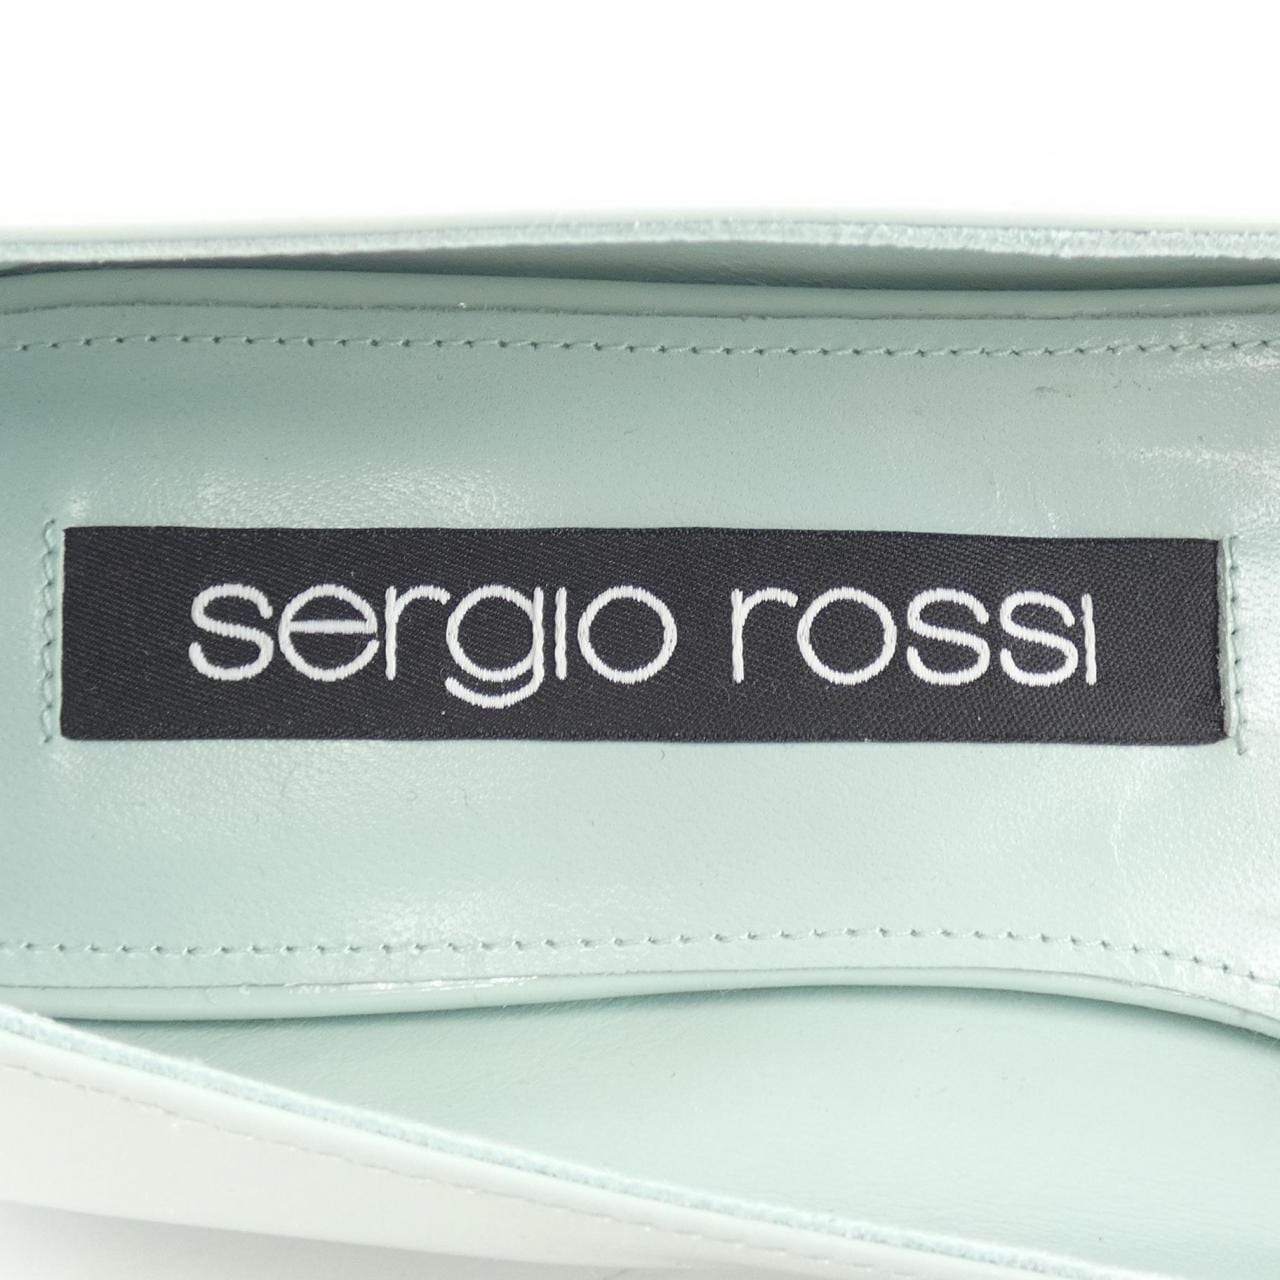 sergio rossi塞尔吉奥·罗西 平底鞋